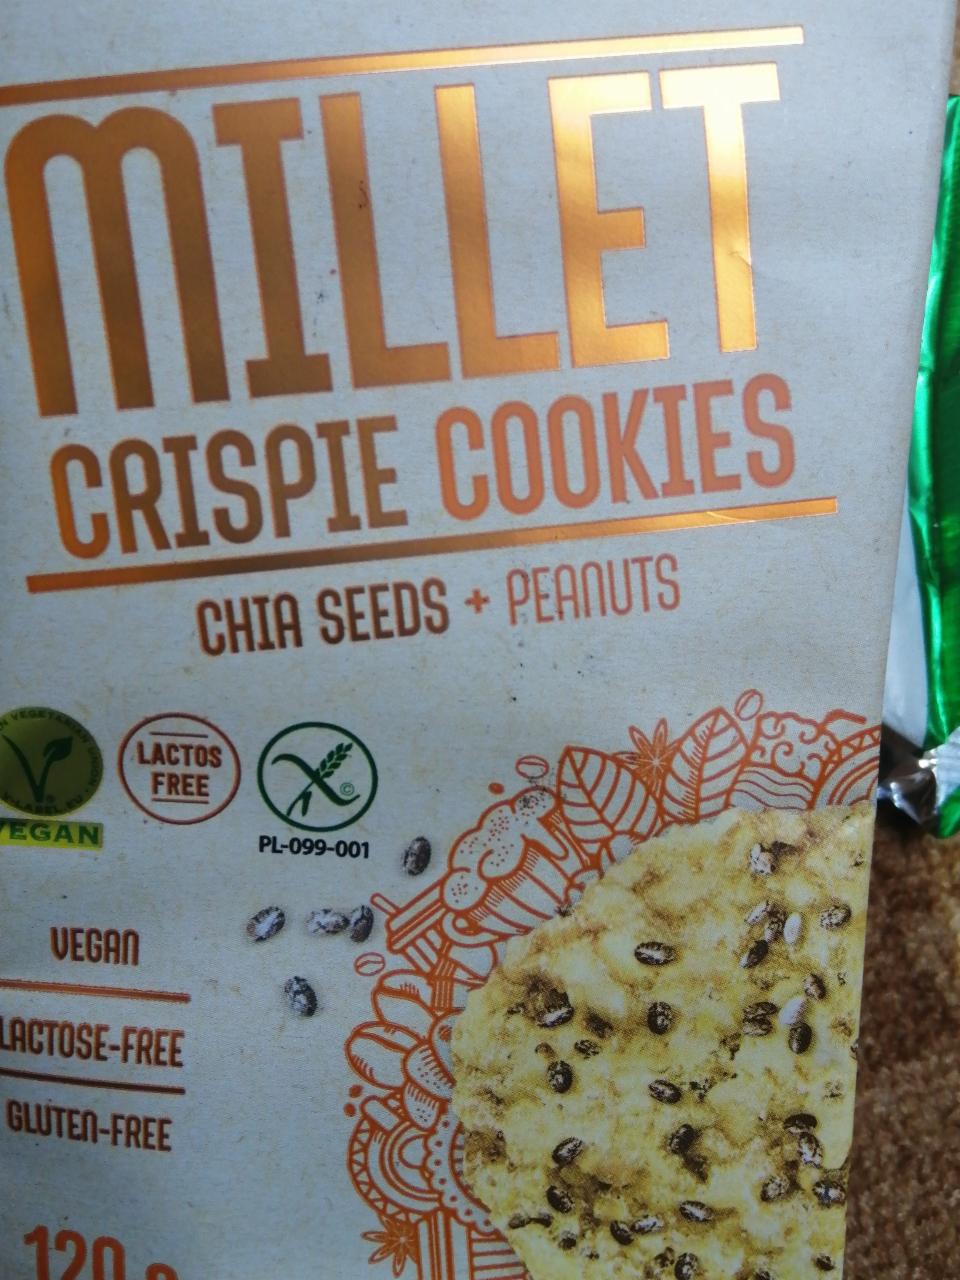 Fotografie - Millet Crispy Cookies Chia Seeds + Peanuts Frank & Oli